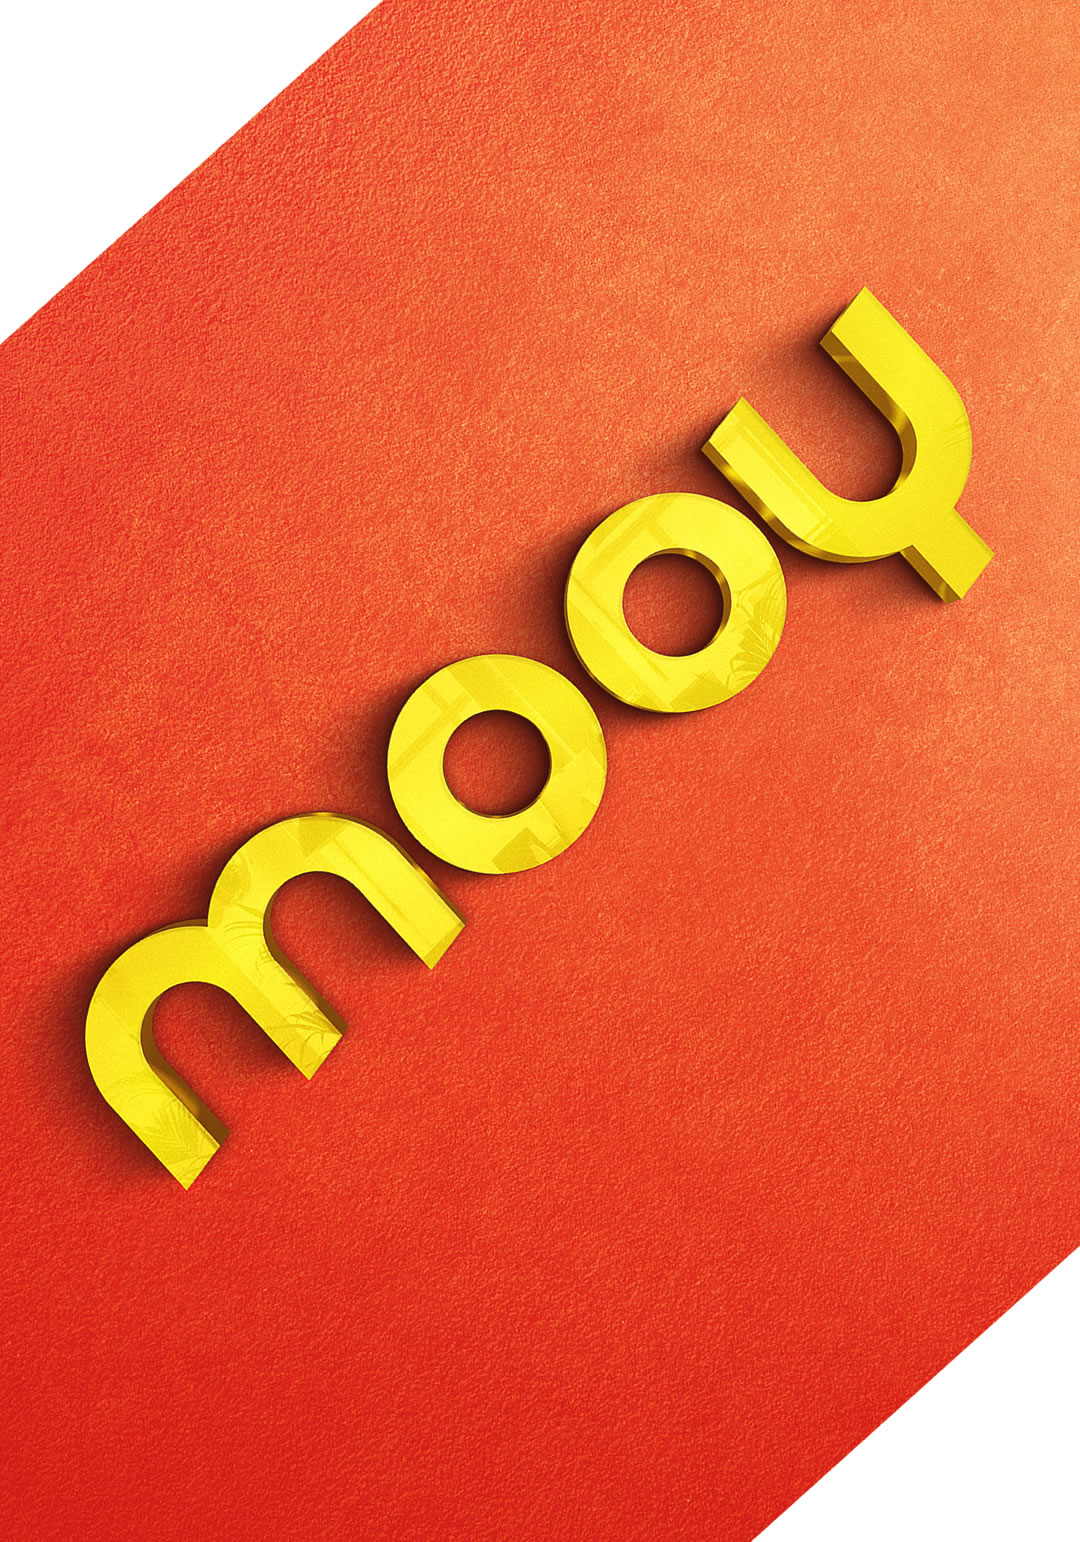 Mooy › Desarrollo de naming y branding (logotipo)